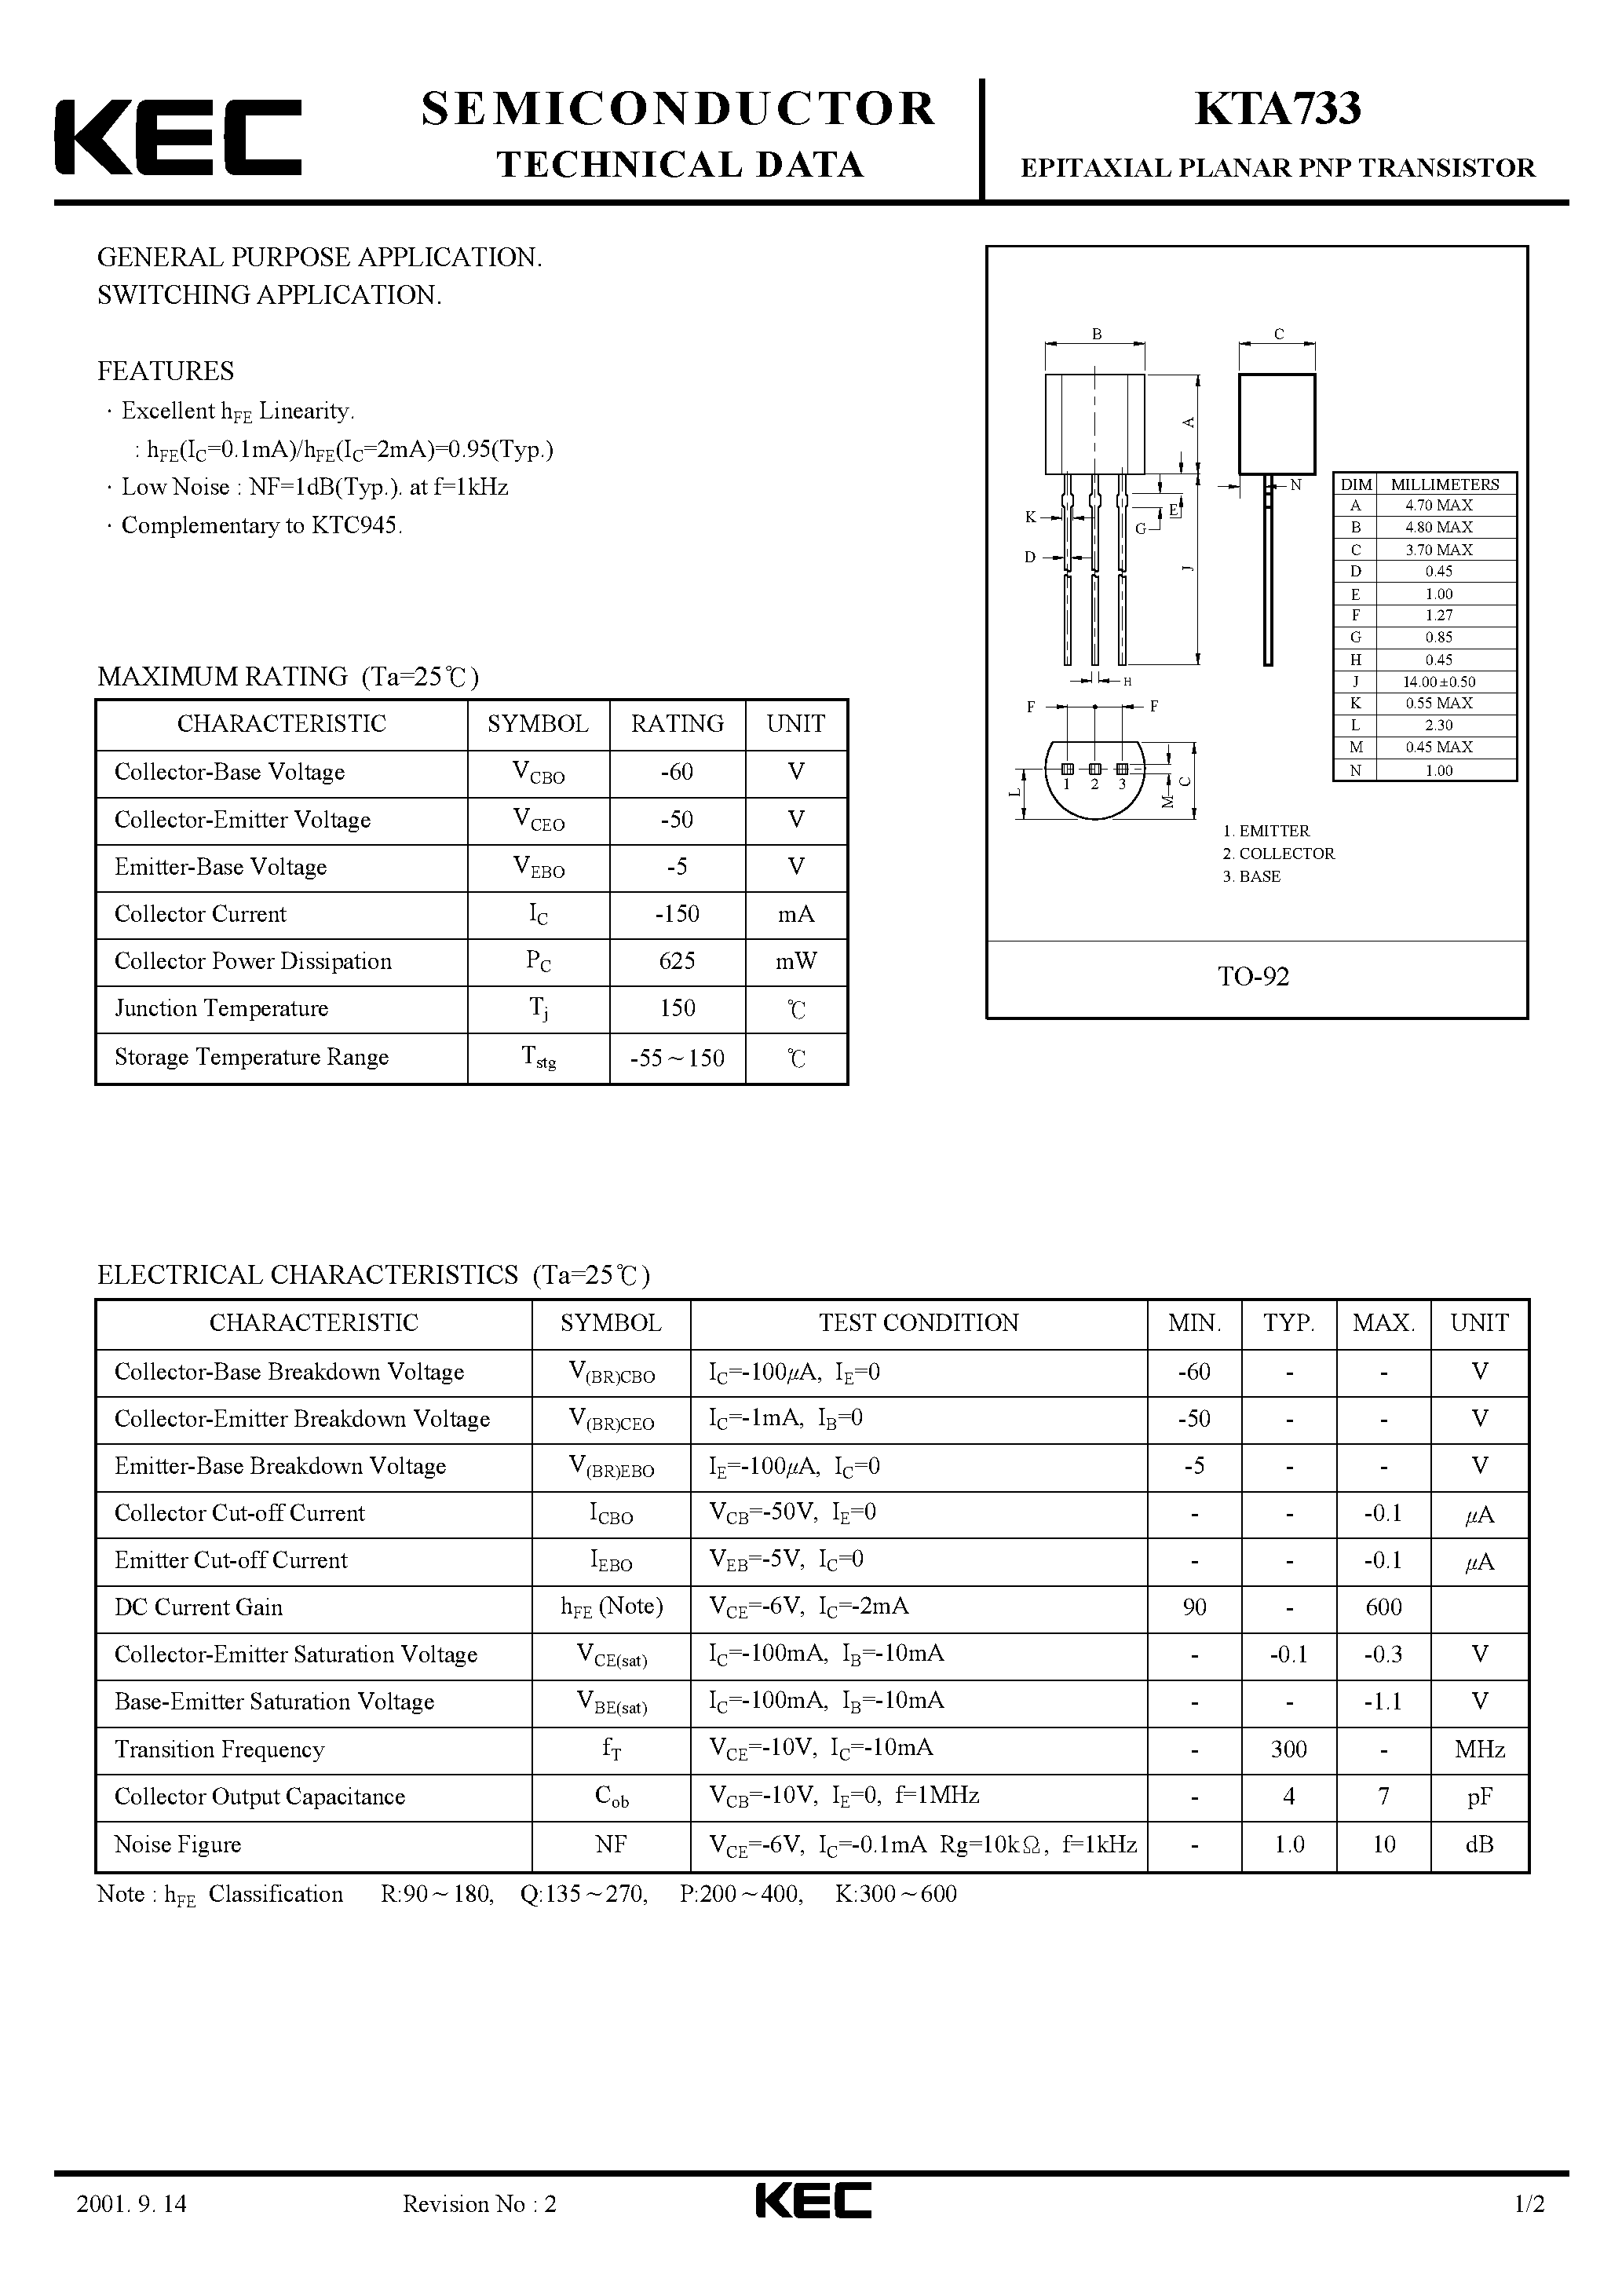 Datasheet KTA733 - EPITAXIAL PLANAR PNP TRANSISTOR (GENERAL PURPOSE/ SWITCHING) page 1